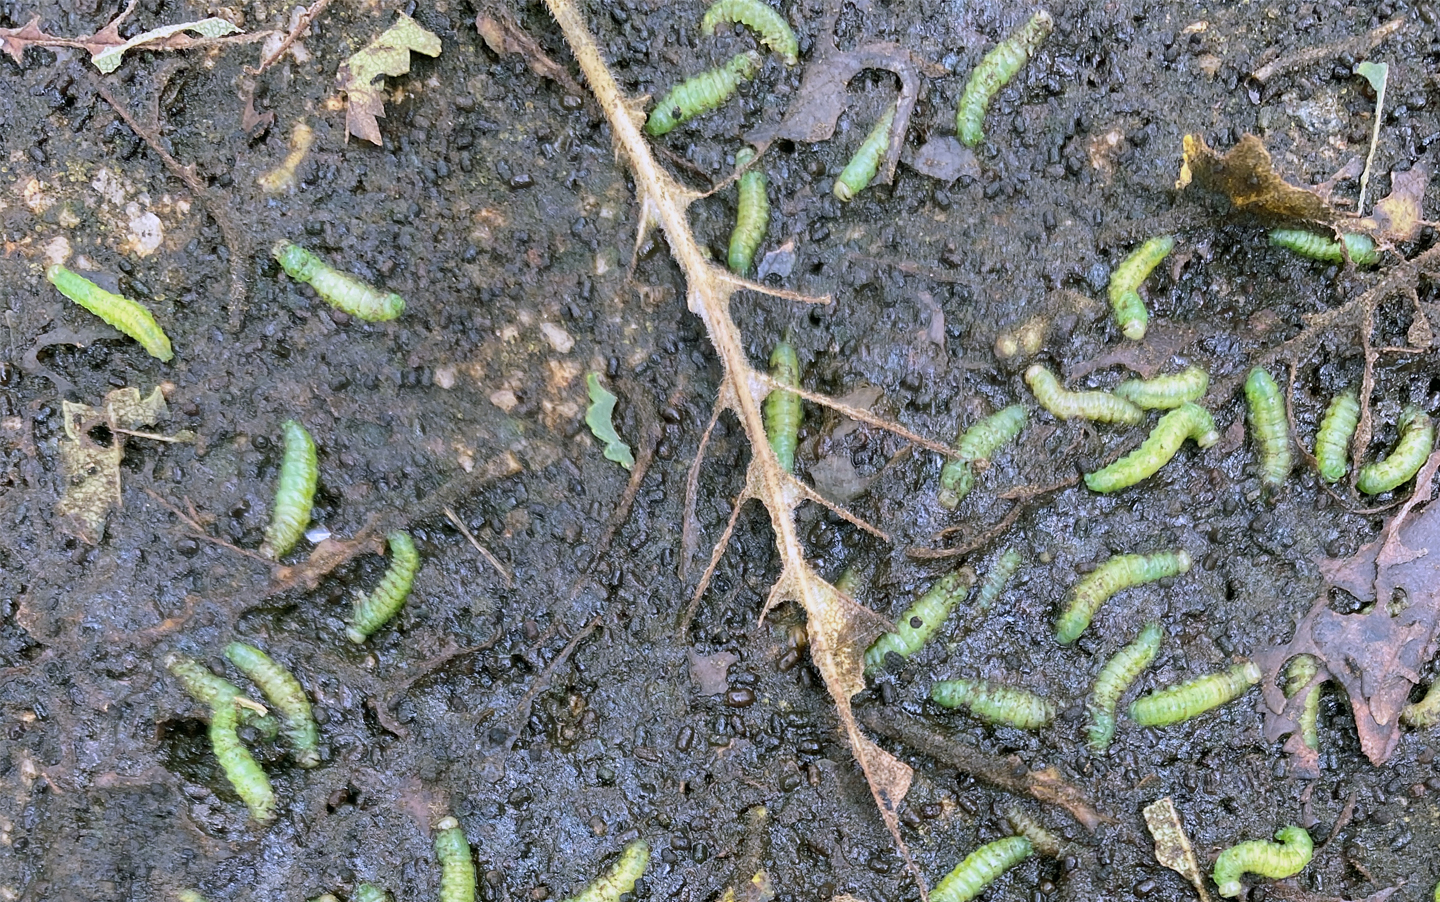 Elm zigzag sawfly larvae